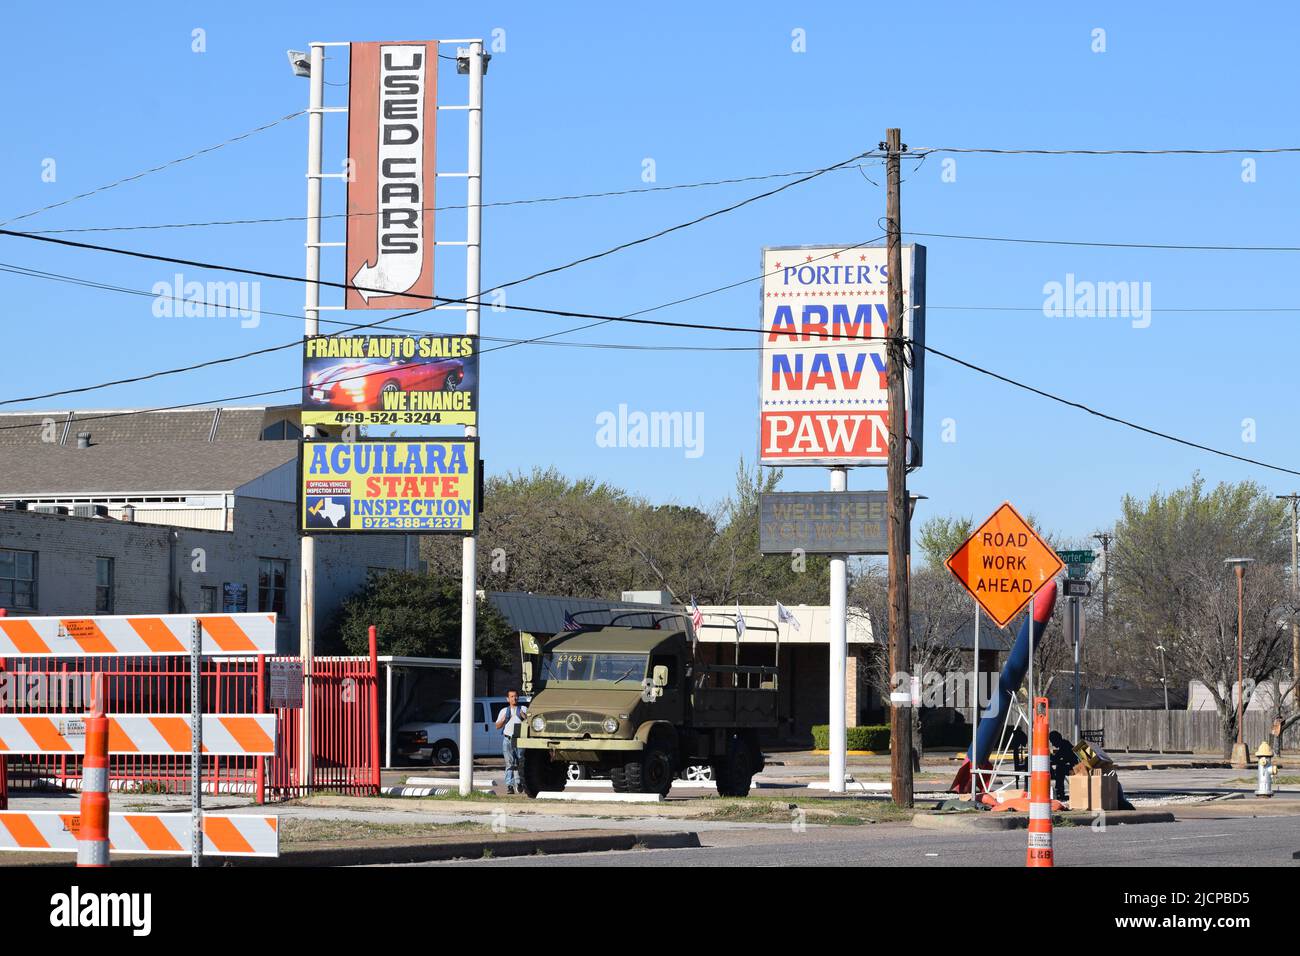 Straße im Bau mit Schildern über der Werbung für gebrauchte Autos und ein Armee Navy-Geschäft und Pfandhaus Stockfoto